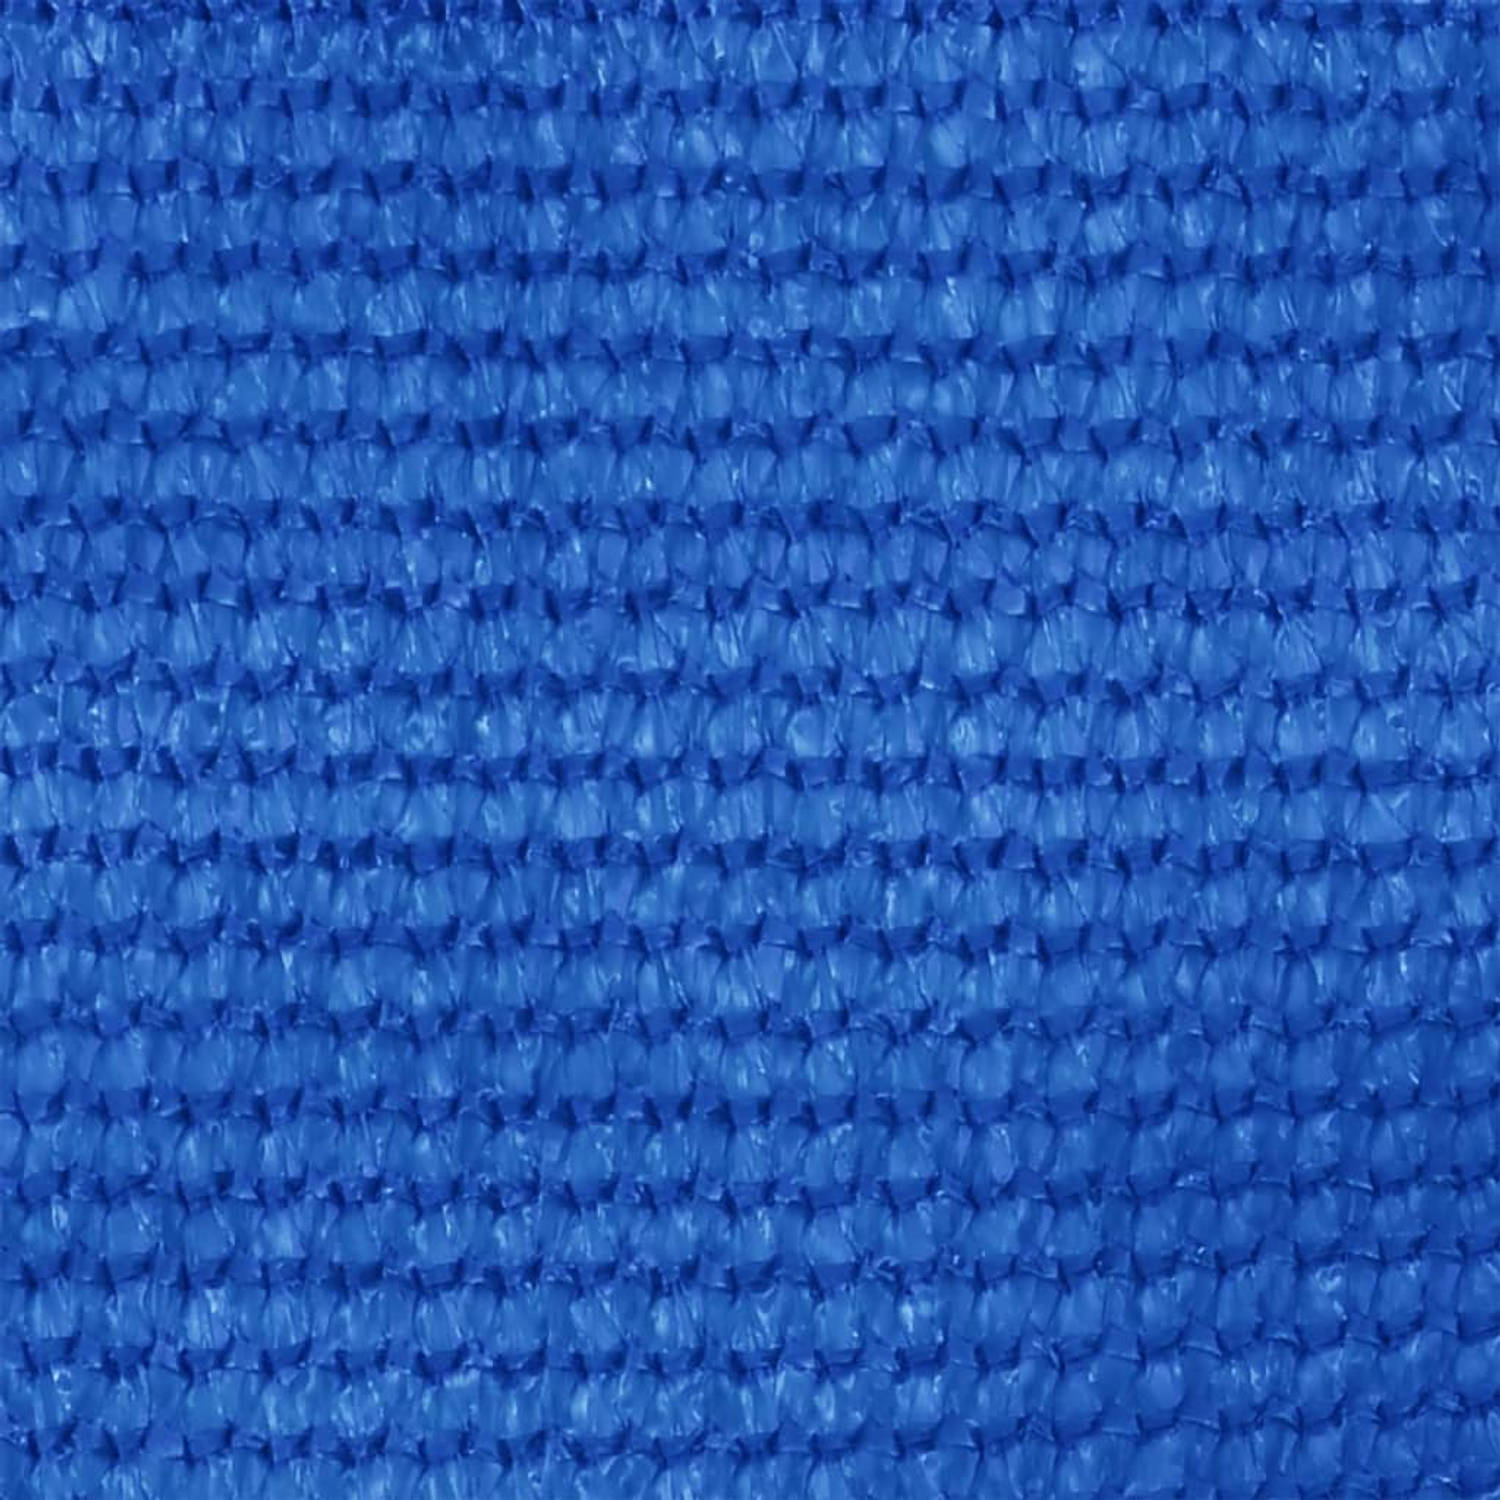 The Living Store Tenttapijt - HDPE - Blauw - 250 x 450 cm - Geïntegreerde oogjes - Weerbestendig